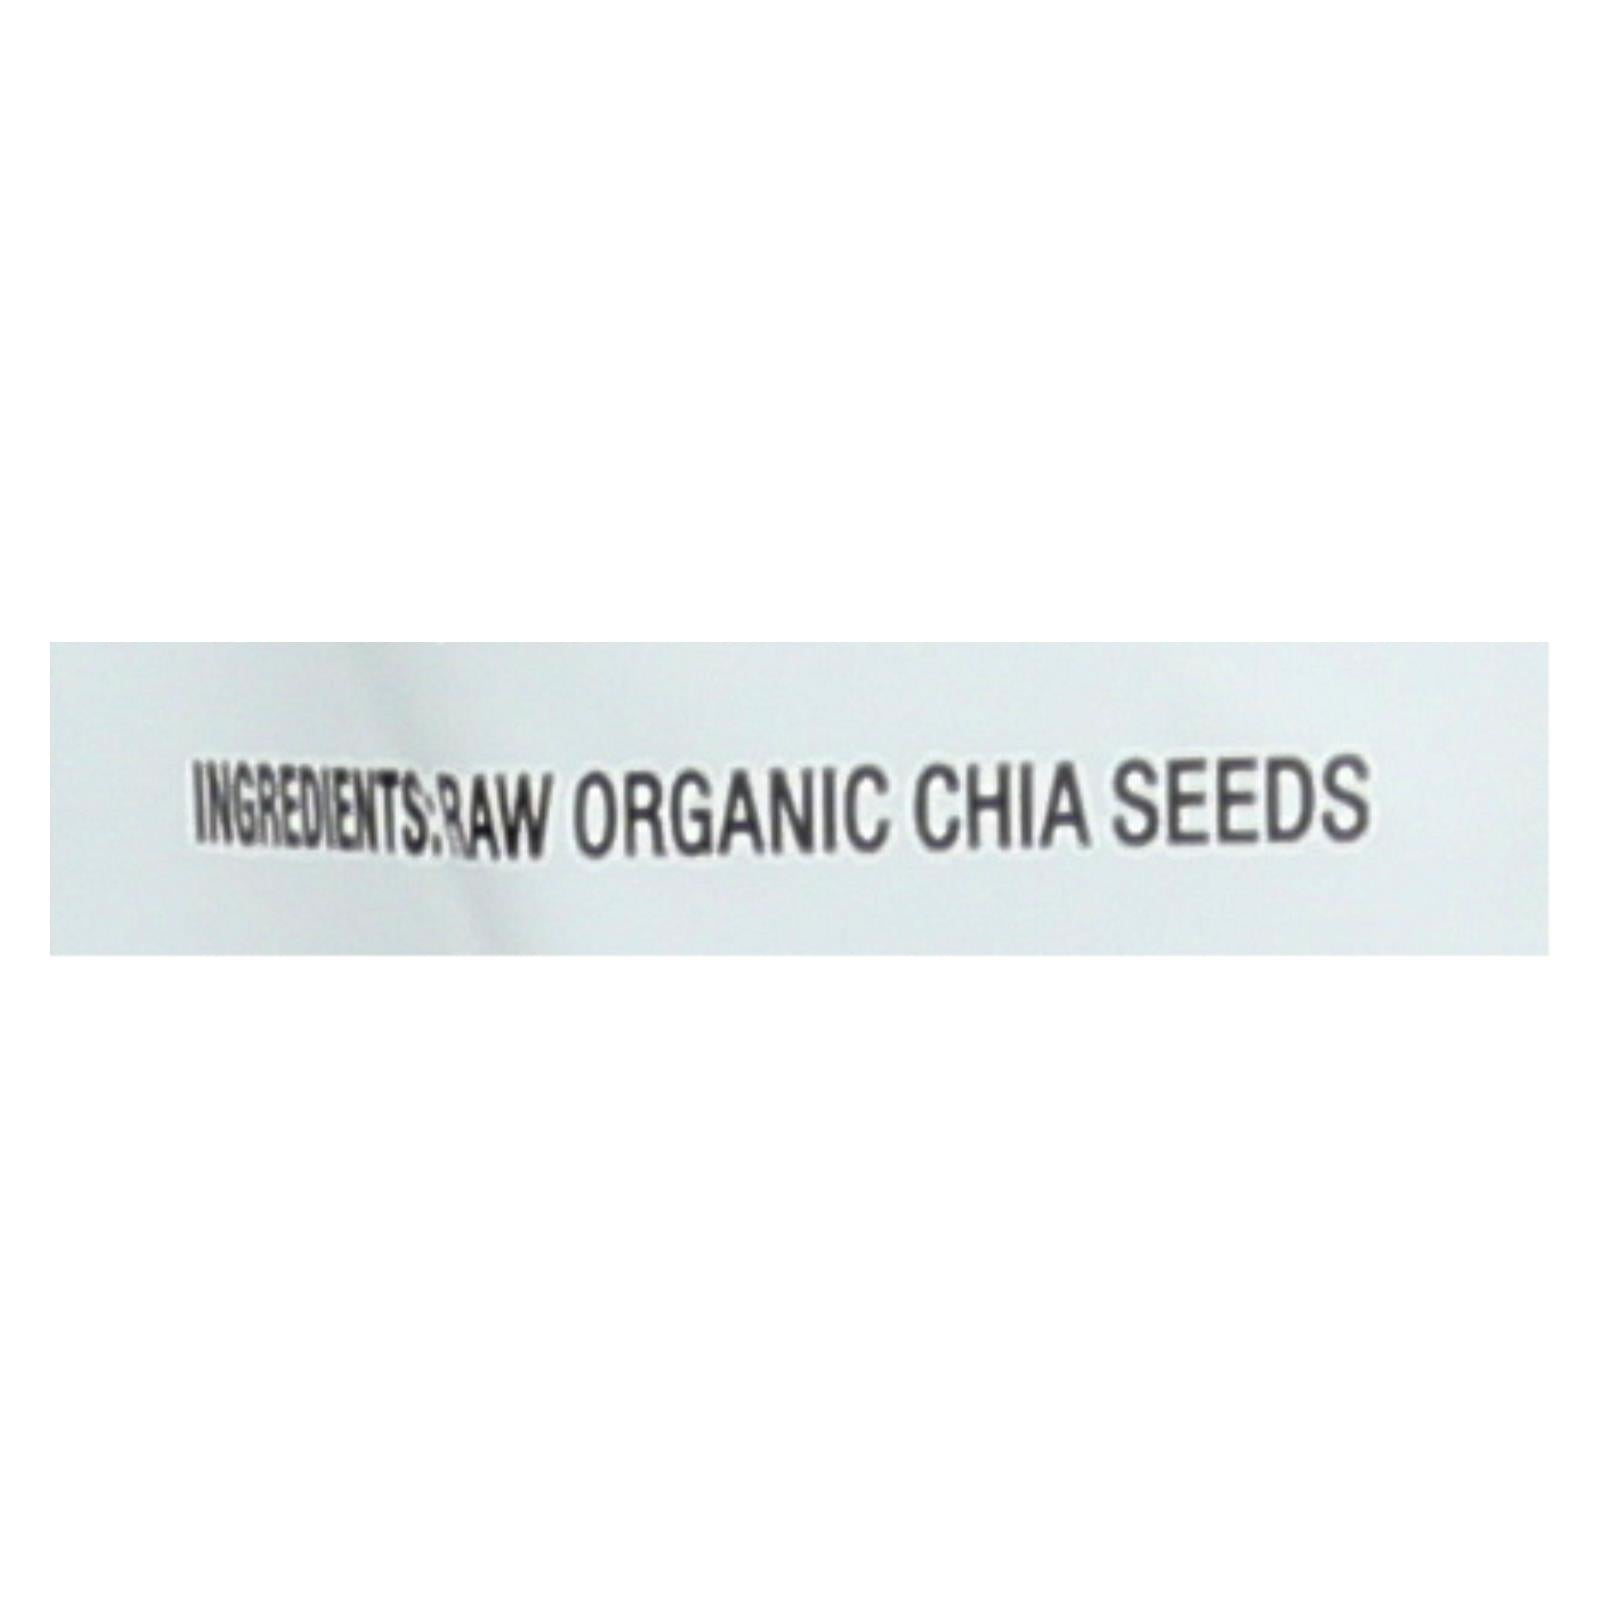 Nutiva Organic Chia Seed - 12 Oz